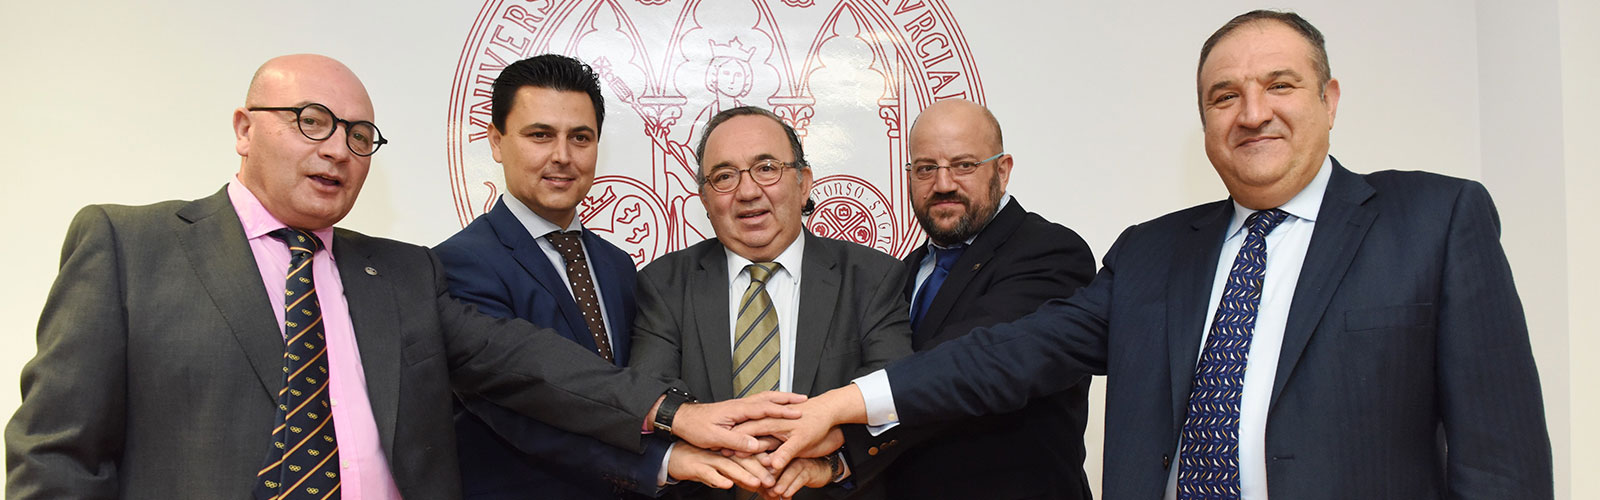 UMU y ayuntamiento de San Javier firman un convenio para la sede permanente